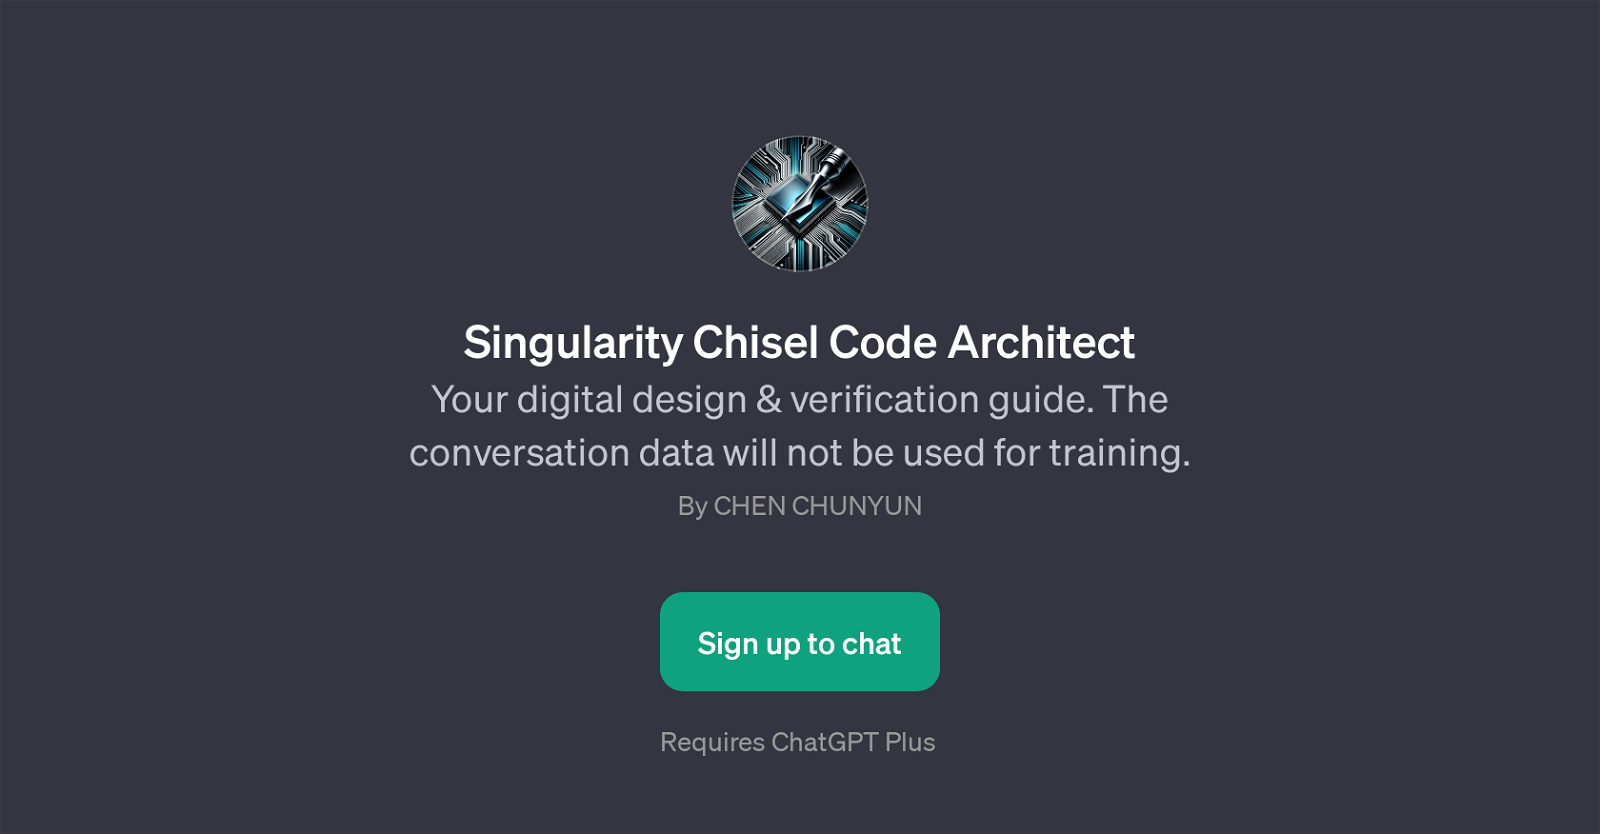 Singularity Chisel Code Architect website